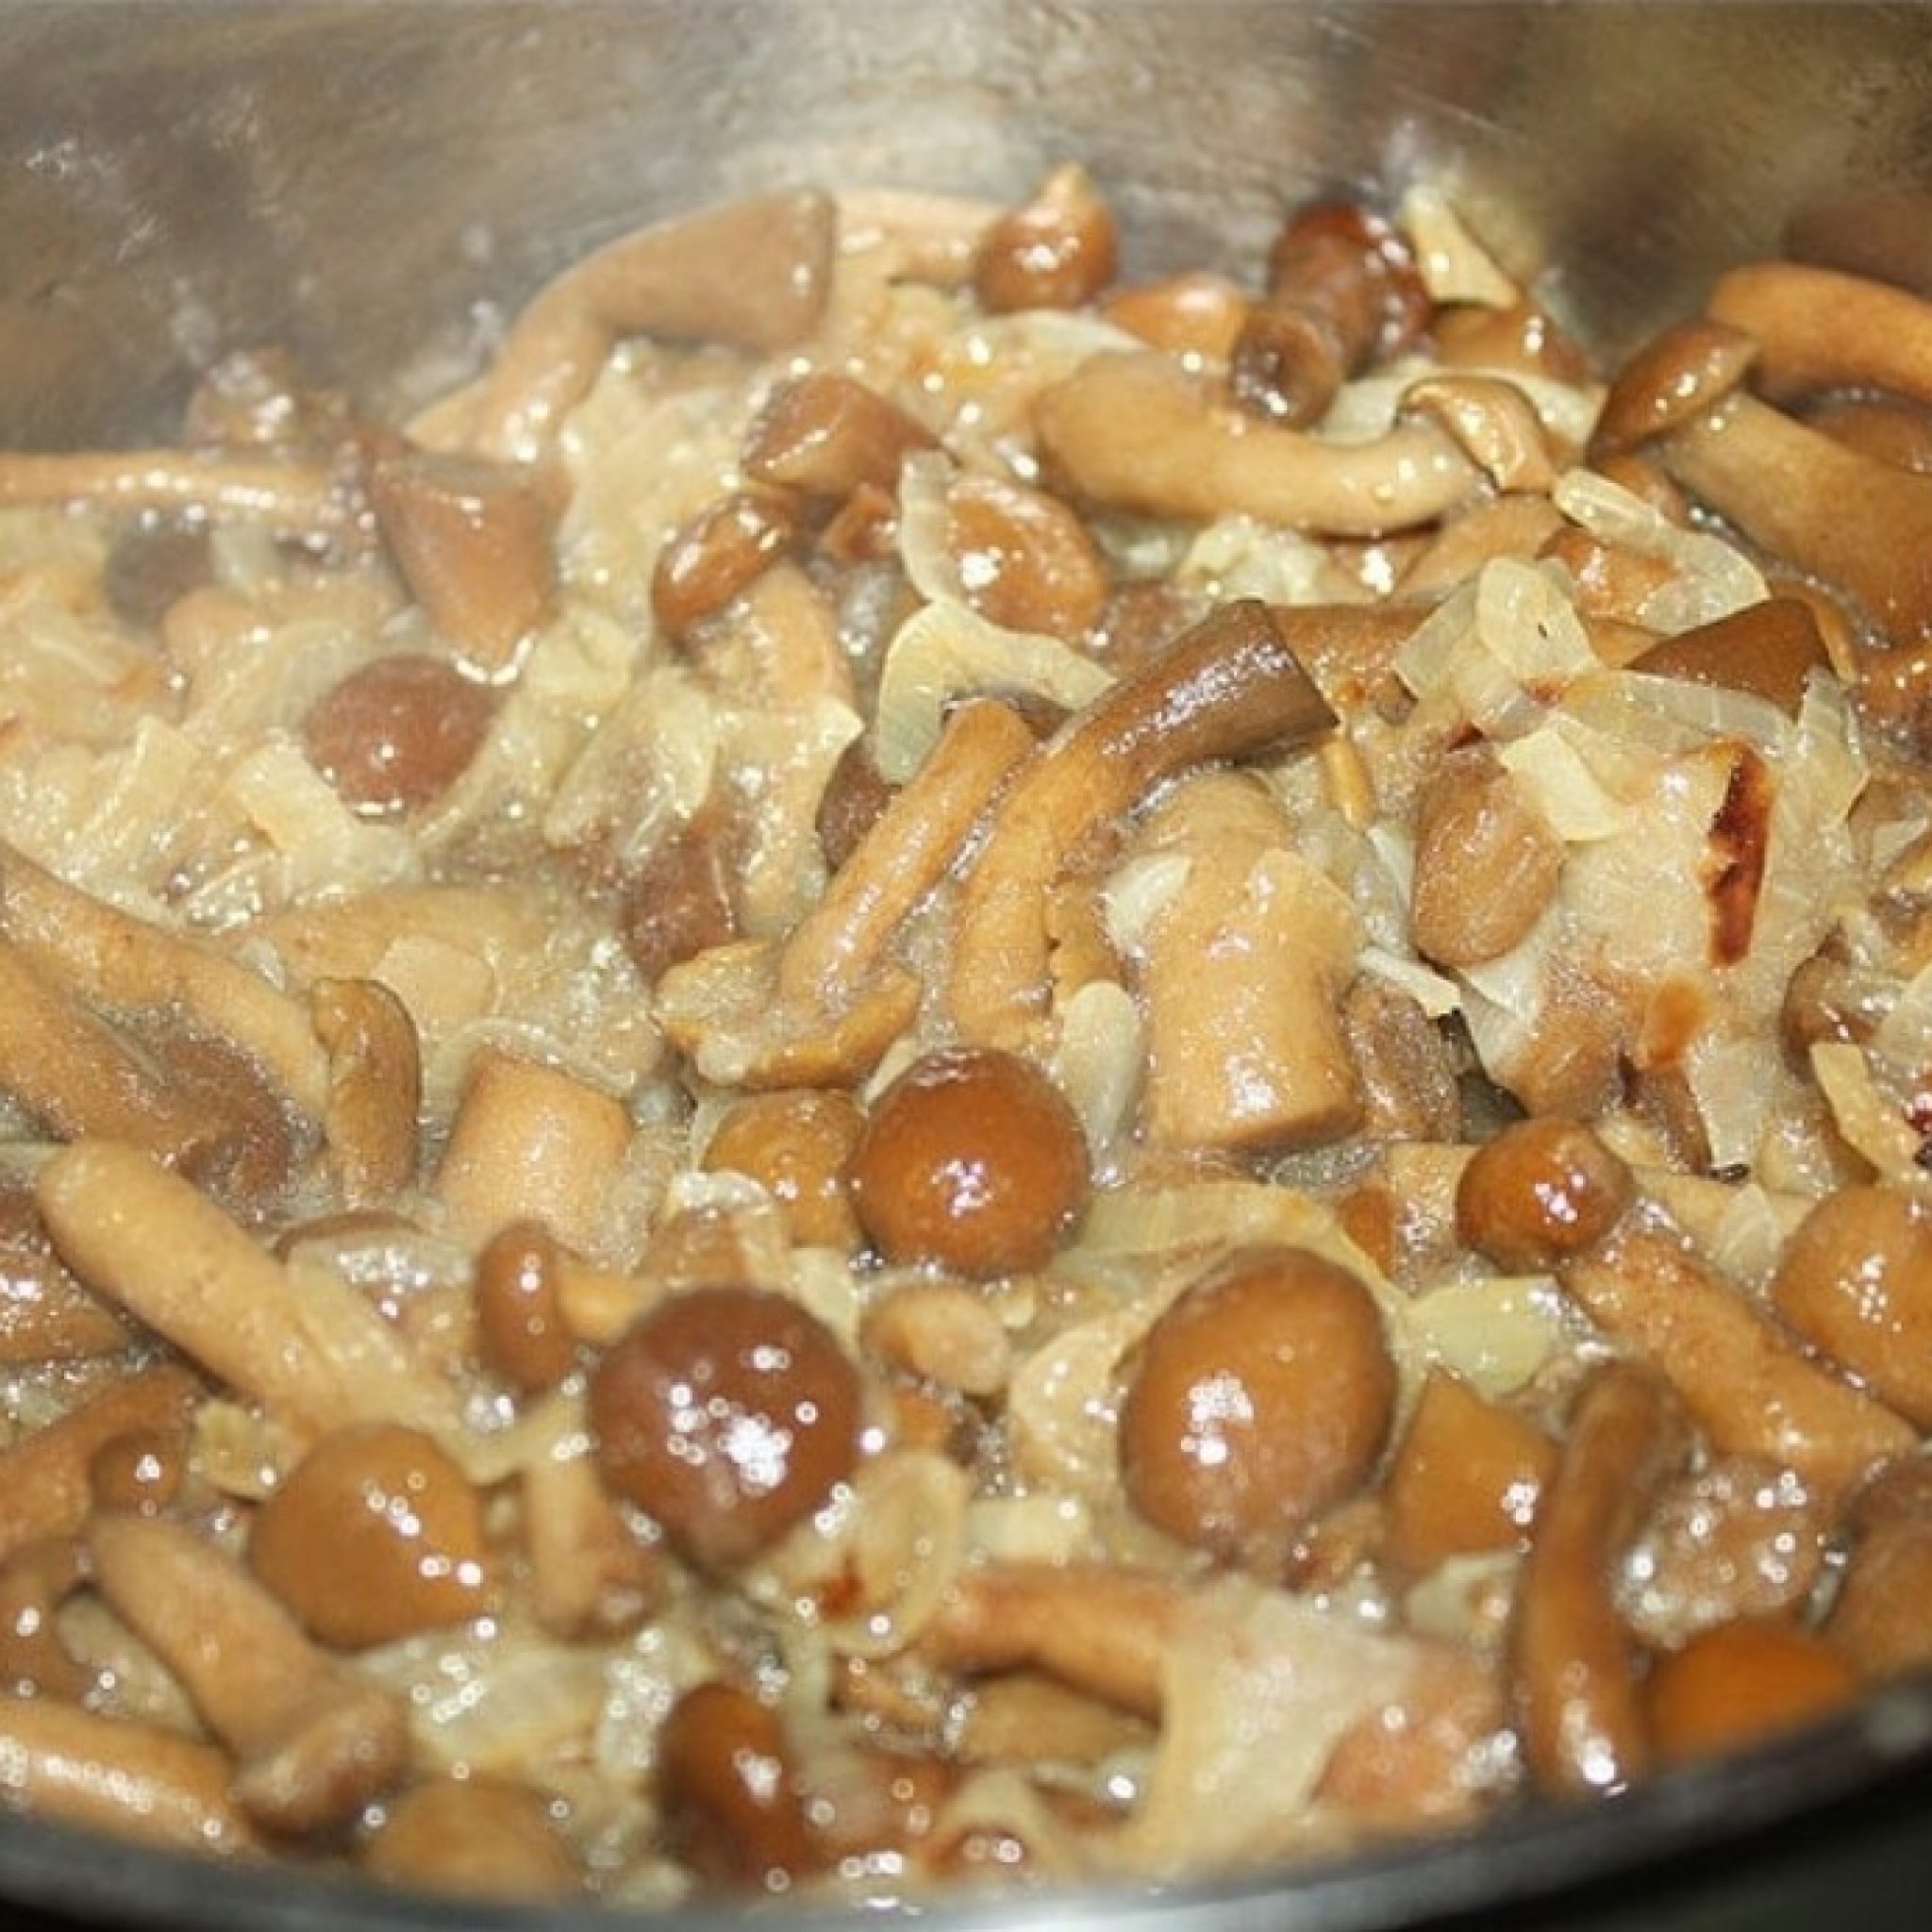 Как вкусно приготовить грибы рыжики — простые и быстрые рецепты